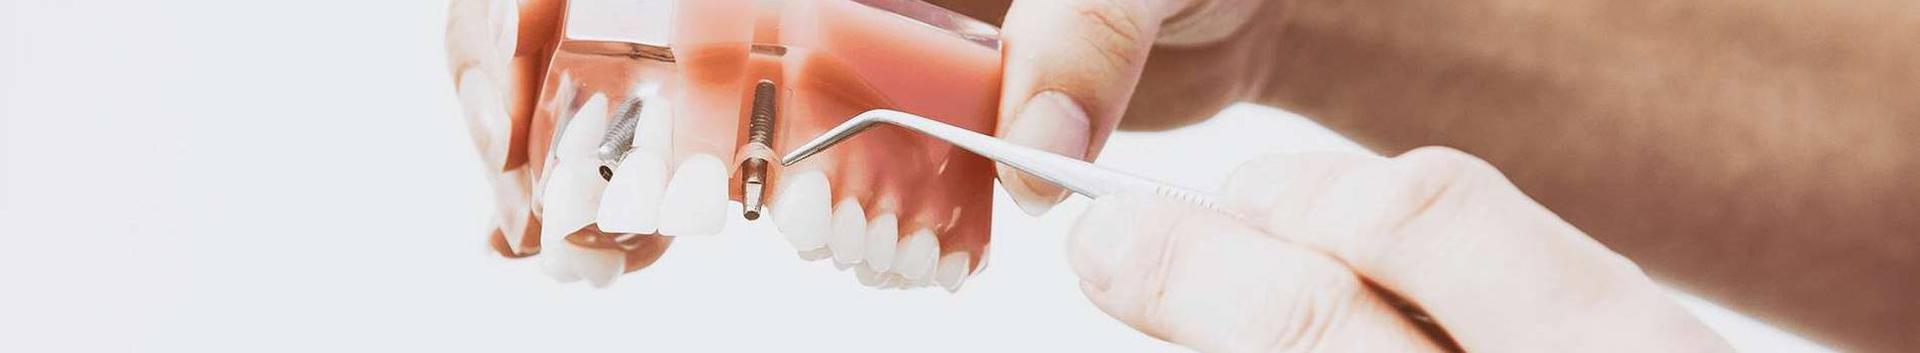 Hambaravi kliinik ConfiDental - kõrgelt kvalifitseeritud hambaravi abi osutamine. Meie hambakliinik on Haigekassa pikaajaline koostööpartner.